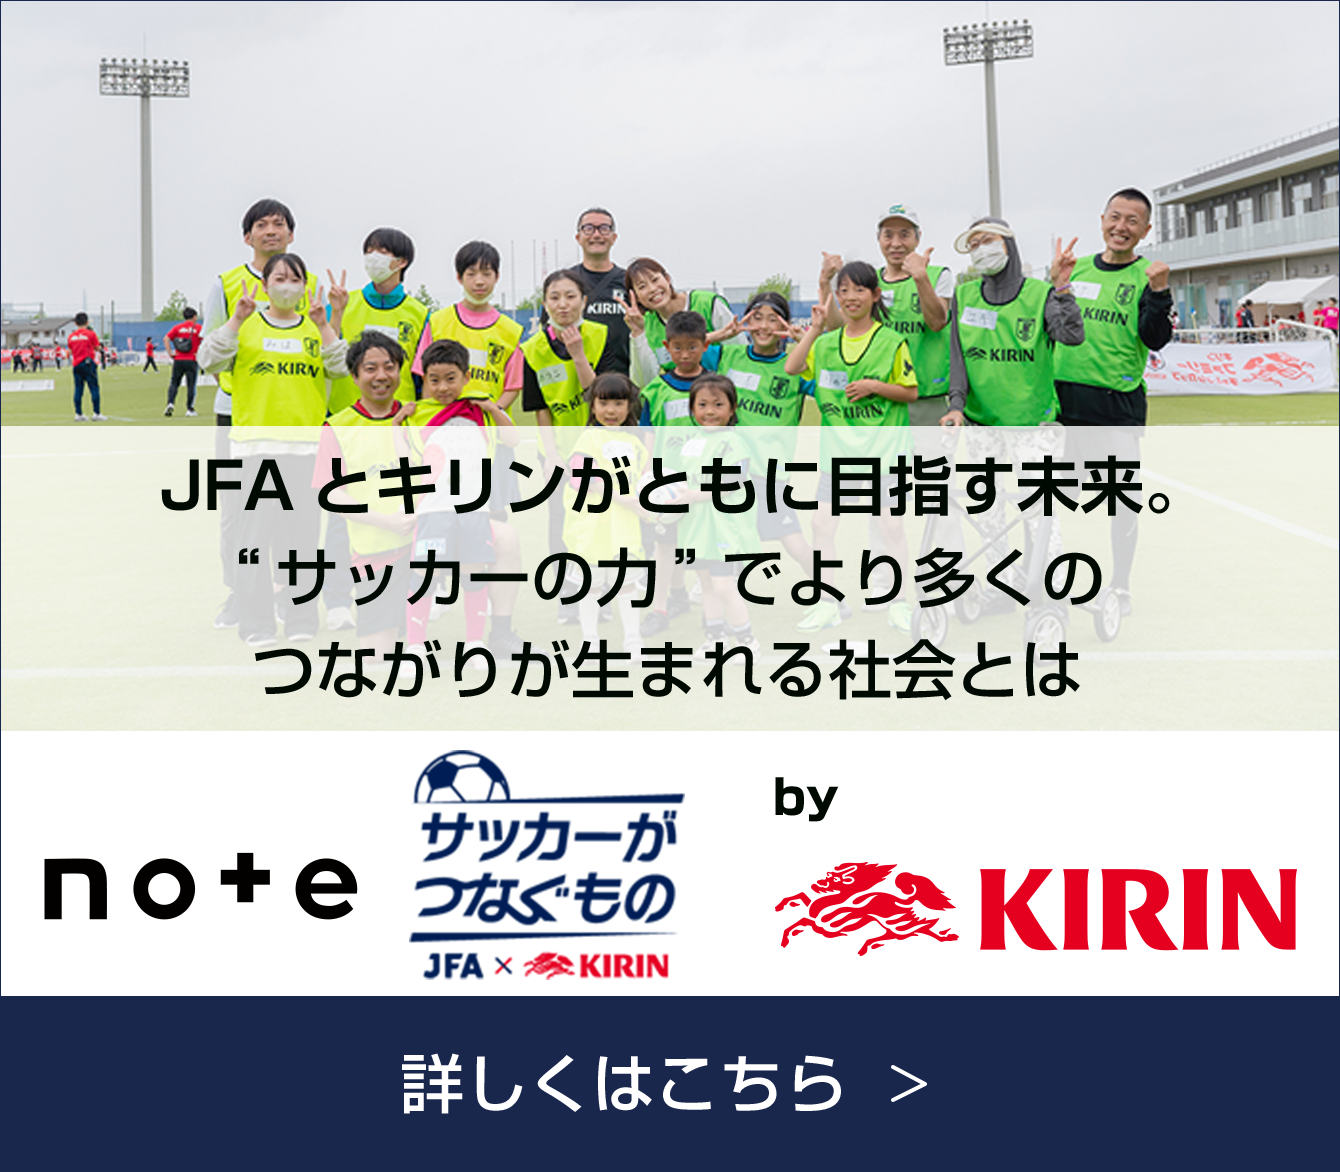 note+ サッカーがつなぐもの JFA×KIRIN by KIRIN JFAとキリンがともに目指す未来。 "サッカーの力"でより多くのつながりが生まれる社会とは 詳しくはこちら